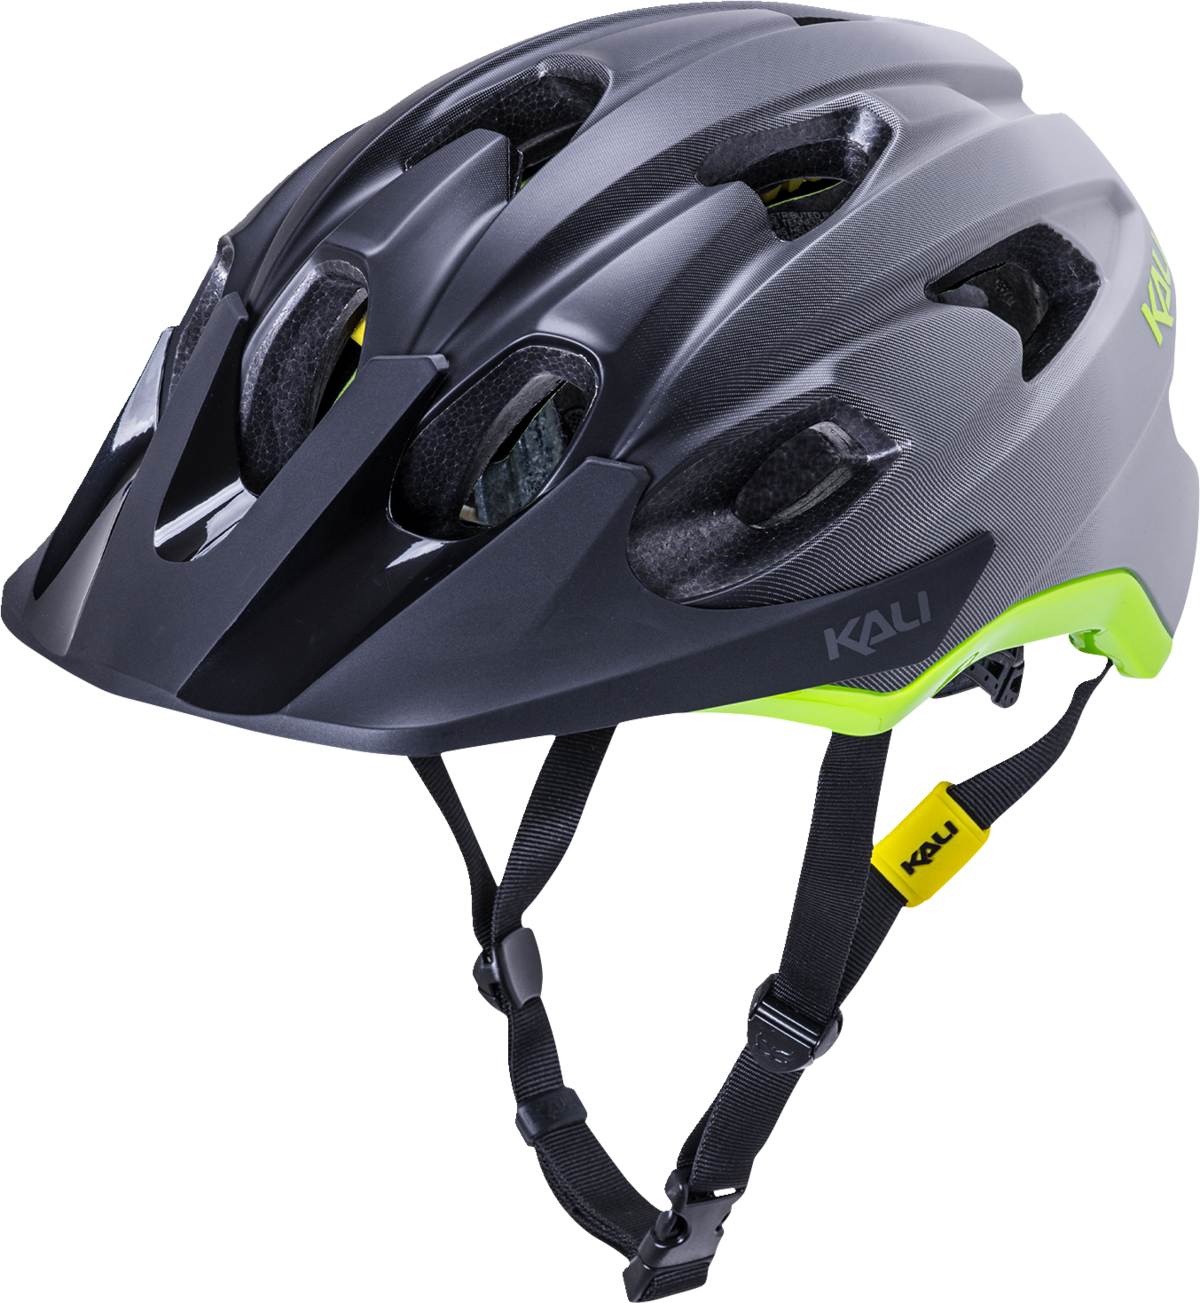 KALI Pace Helmet - Fade - Black/Gray/Fluorescent Yellow - XL/2XL 0221722118